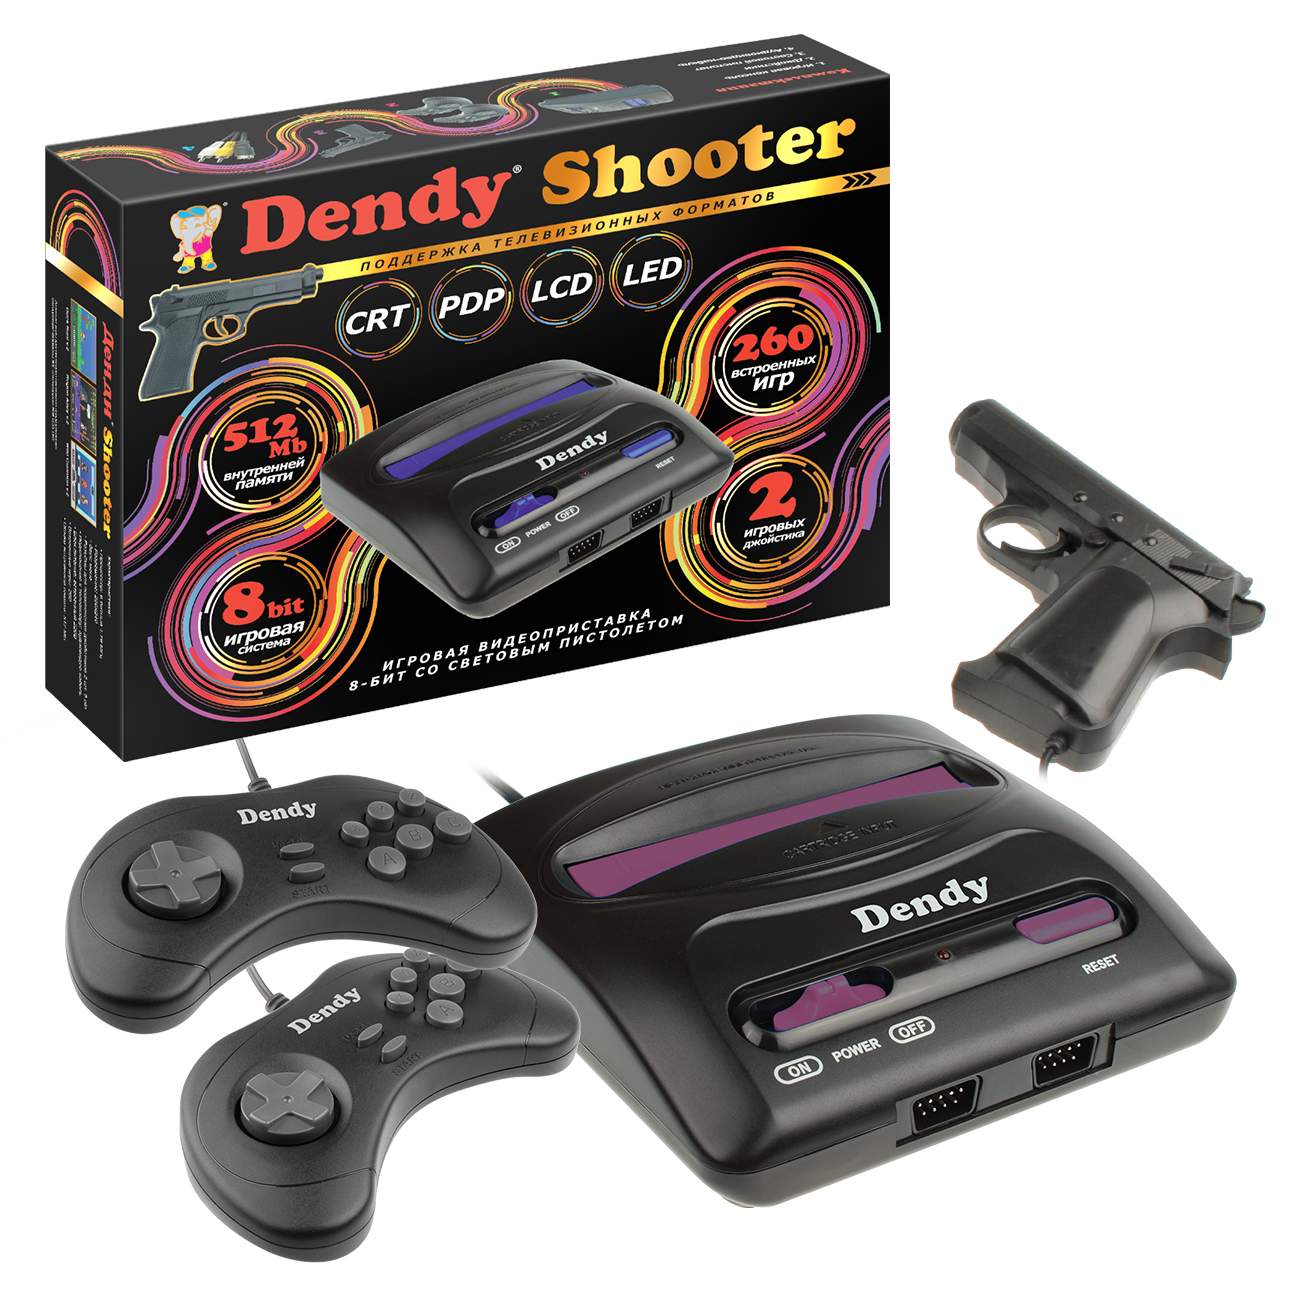 Игровая приставка Dendy Shooter 260 игр + световой пистолет, купить в Москве, цены в интернет-магазинах на Мегамаркет